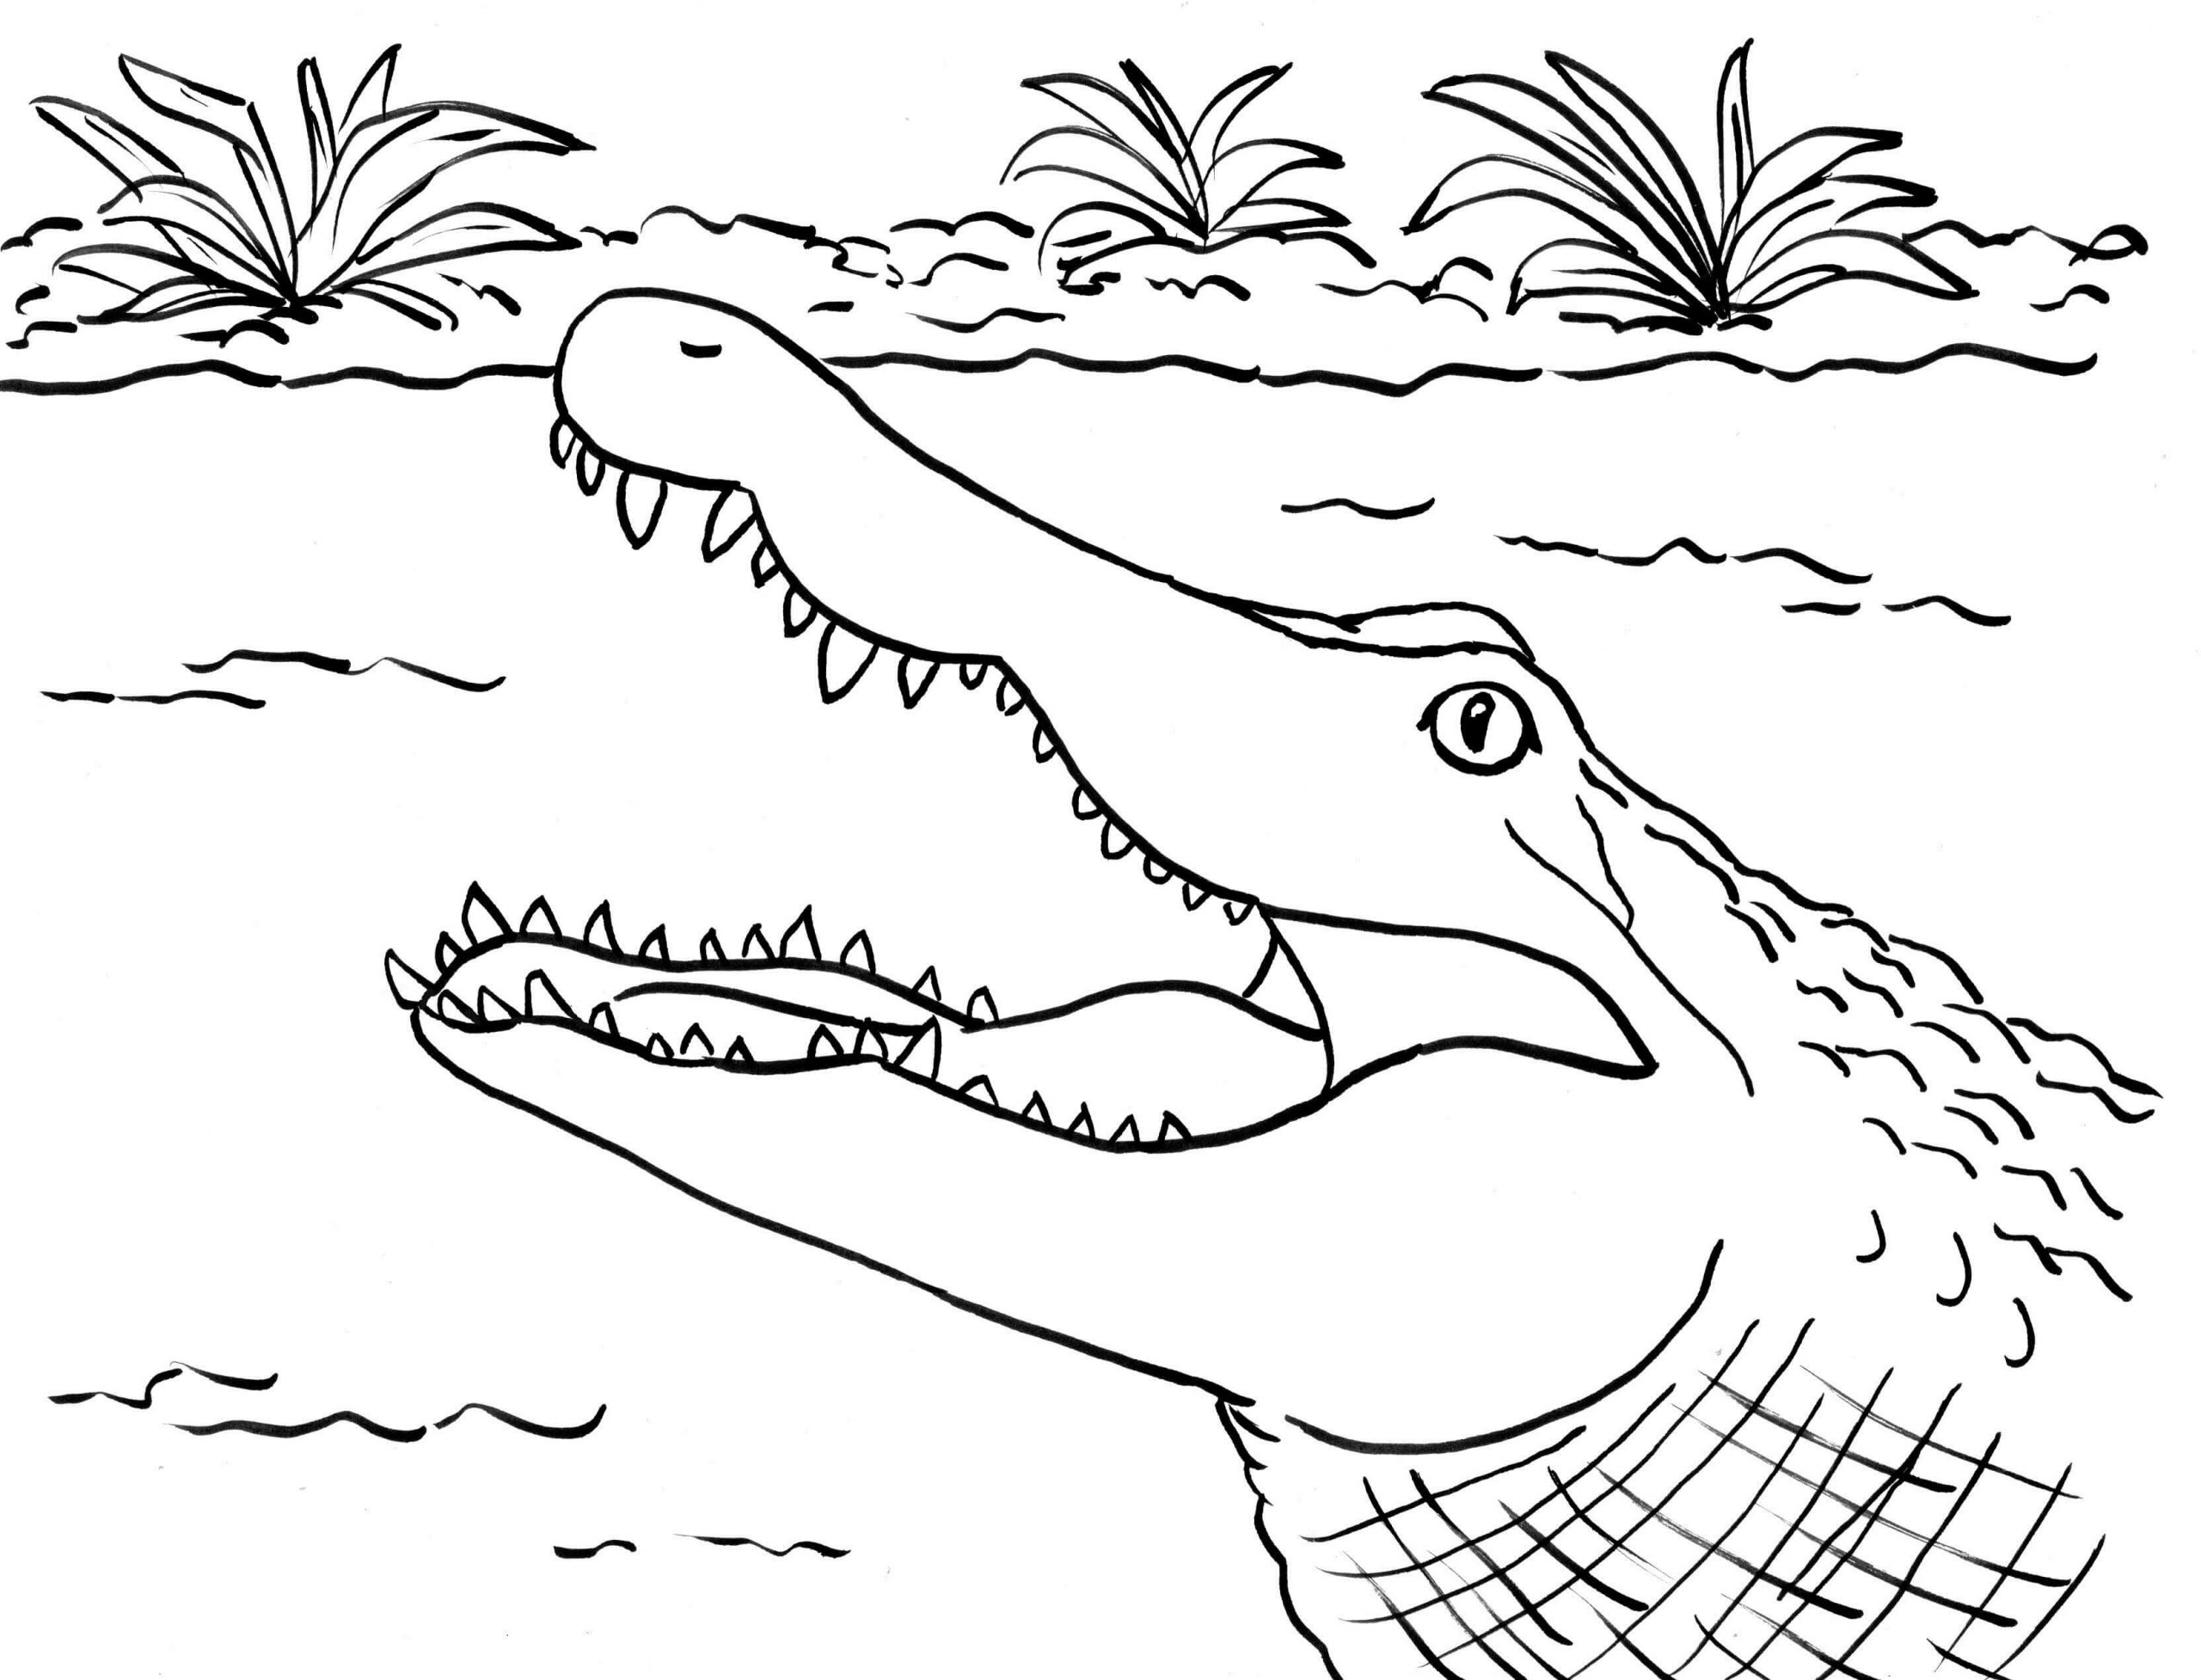 Cara de Crocodilo para colorir